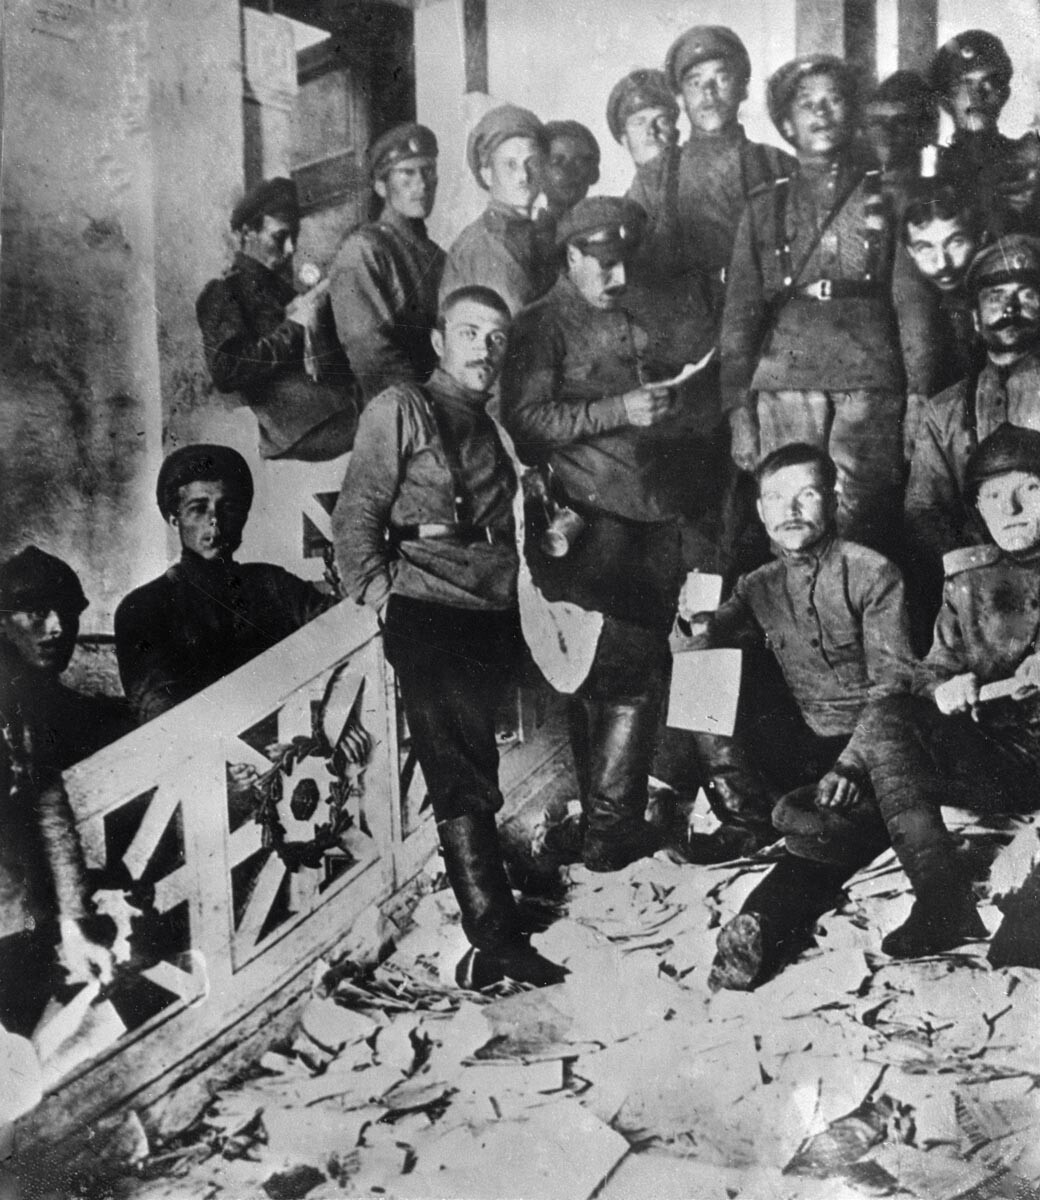 Des élèves-officiers dans les locaux ravagés du Comité central du Parti ouvrier social-démocrate de Russie dans l’ancien hôtel Ksechinskaïa, juin 1917